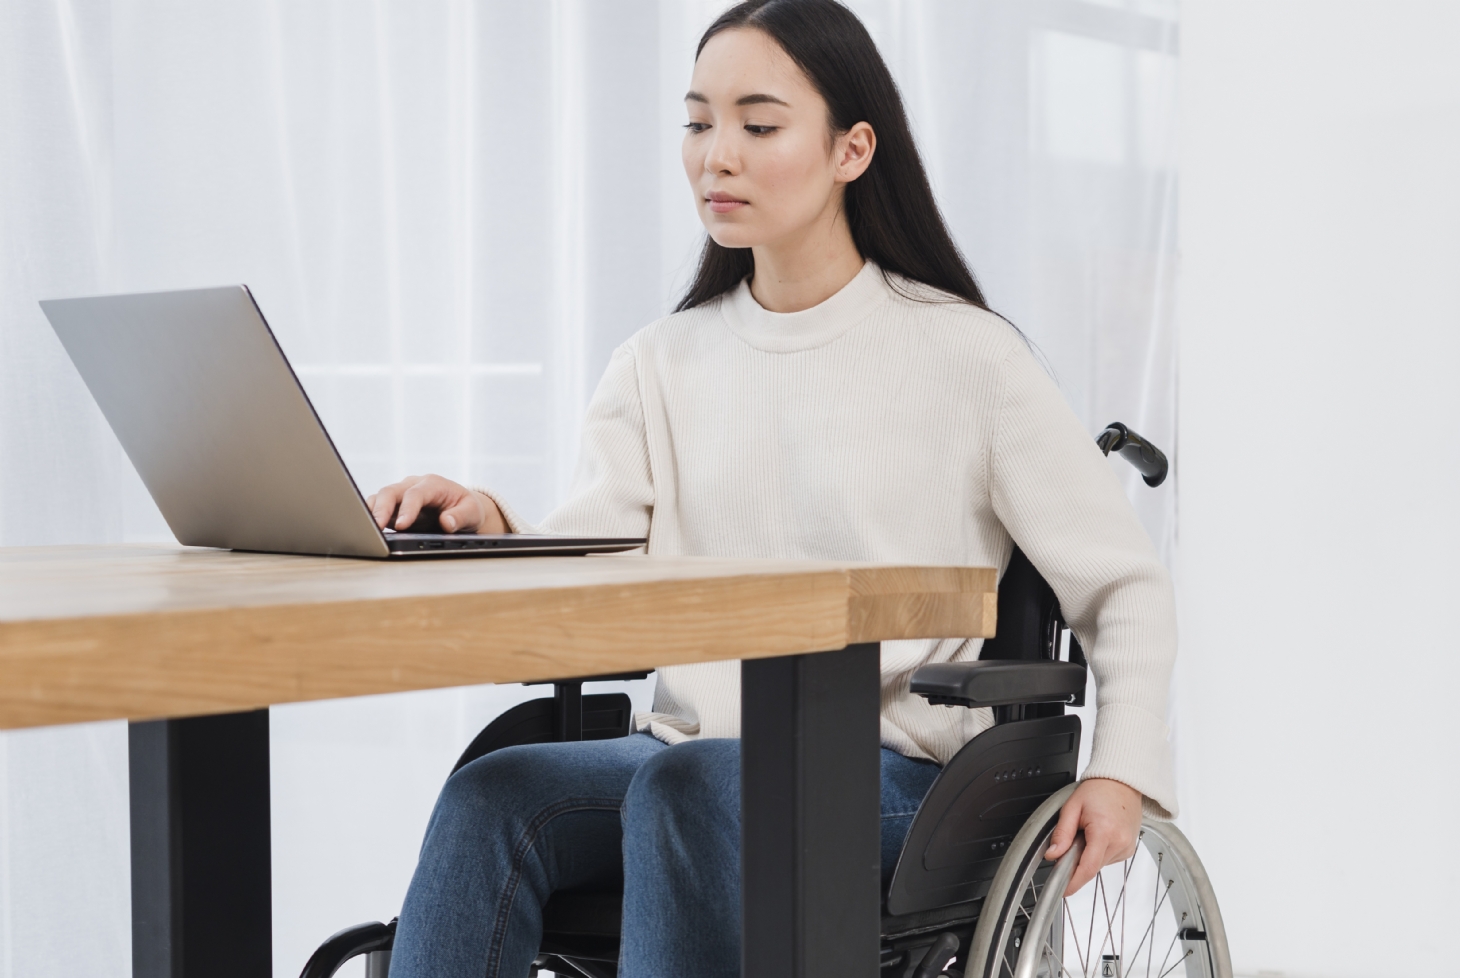 Cursos de inclusão digital abrem inscrições para pessoas com deficiências | Jornal da Orla